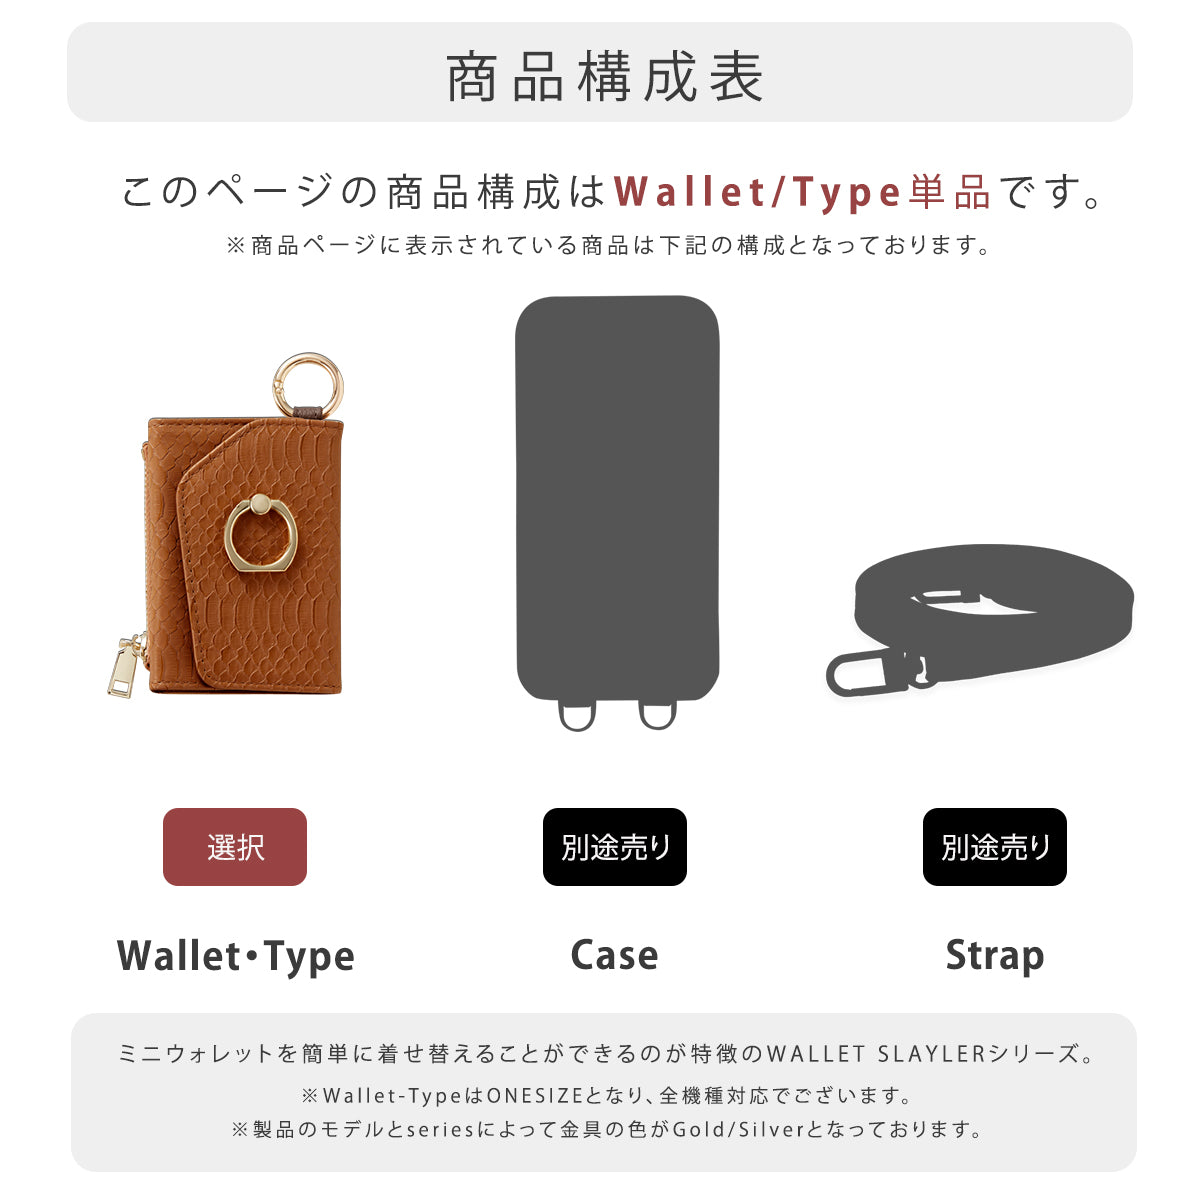 【WALLET SLAYLER】LEATHER CARD CASE CROCCO-PINK